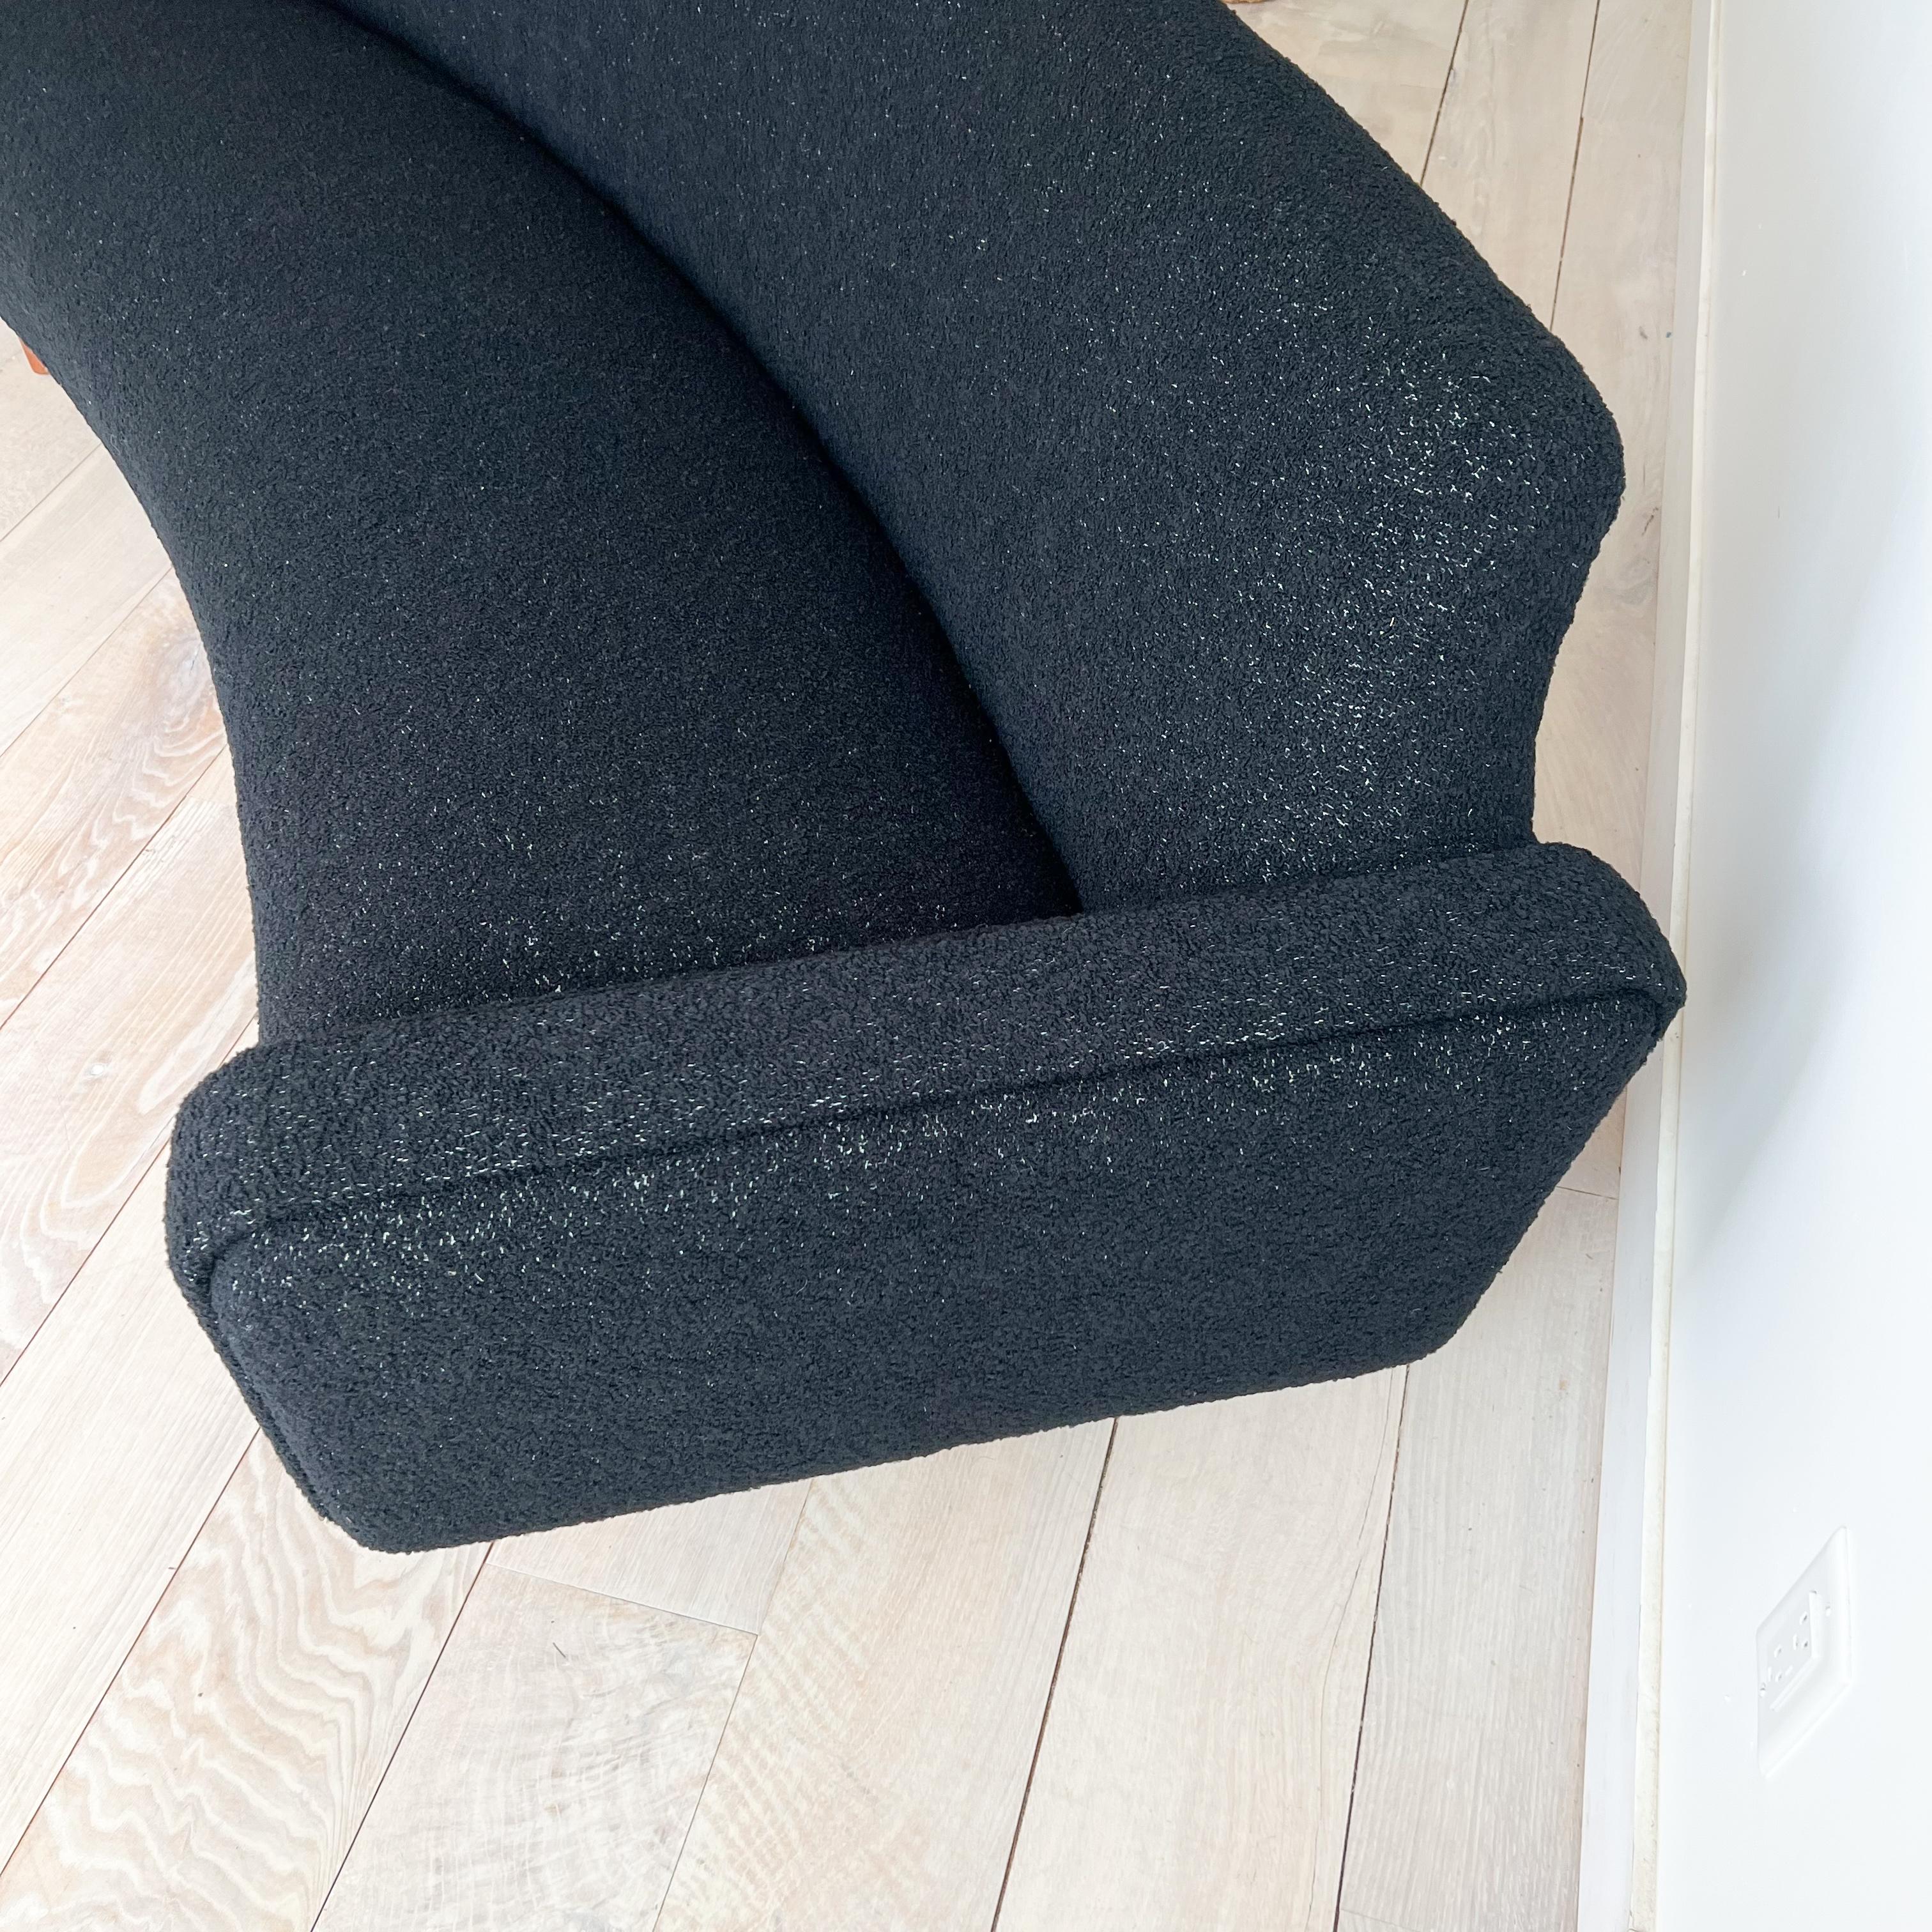 Illum Wikkelso's Rare Banana Curved Sofa - Model 450 - New Upholstery 10